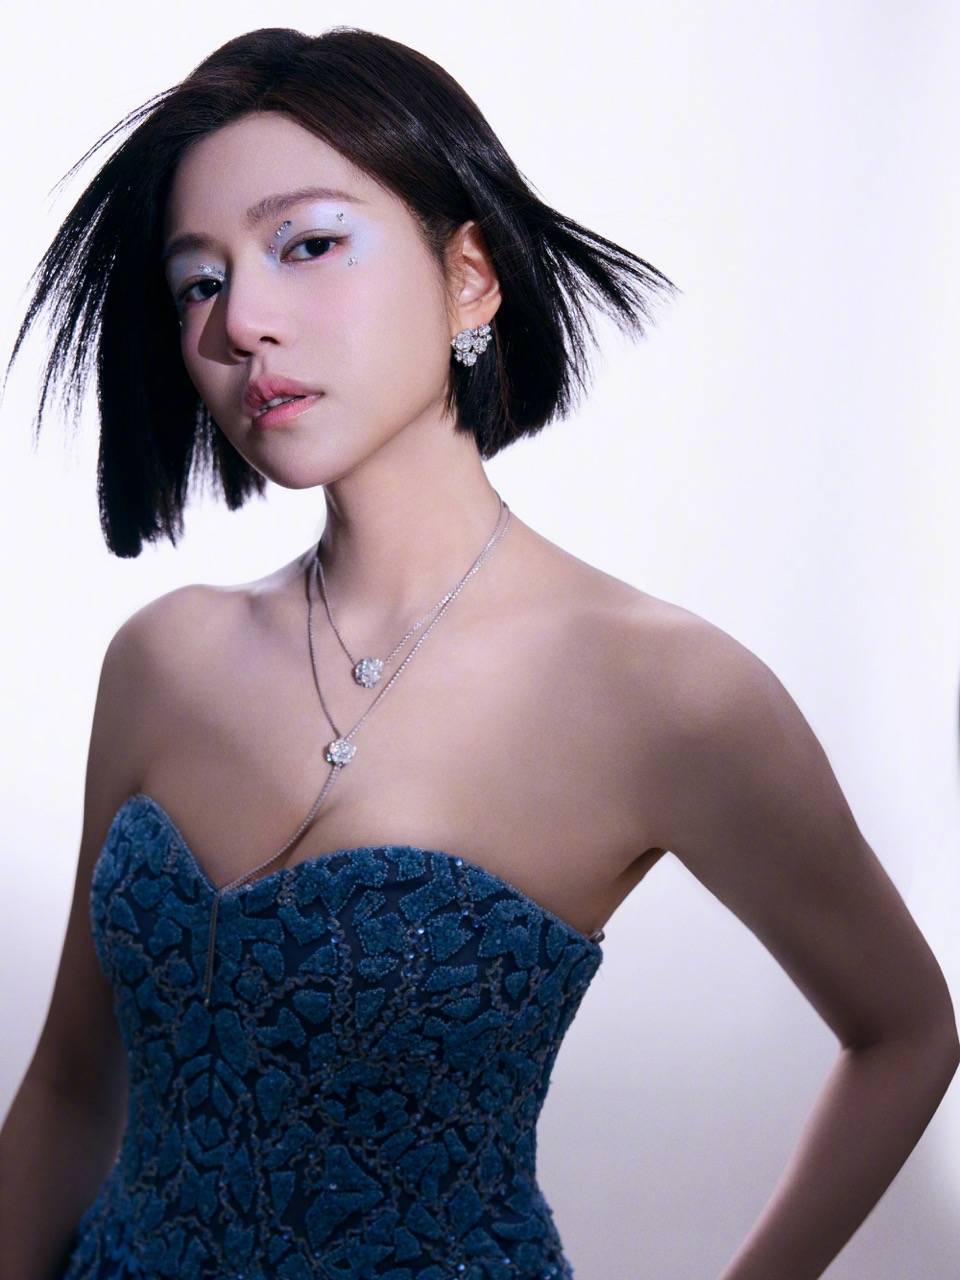 陈妍希 陈妍希的短髮新造型获网民大讚十分适合她。